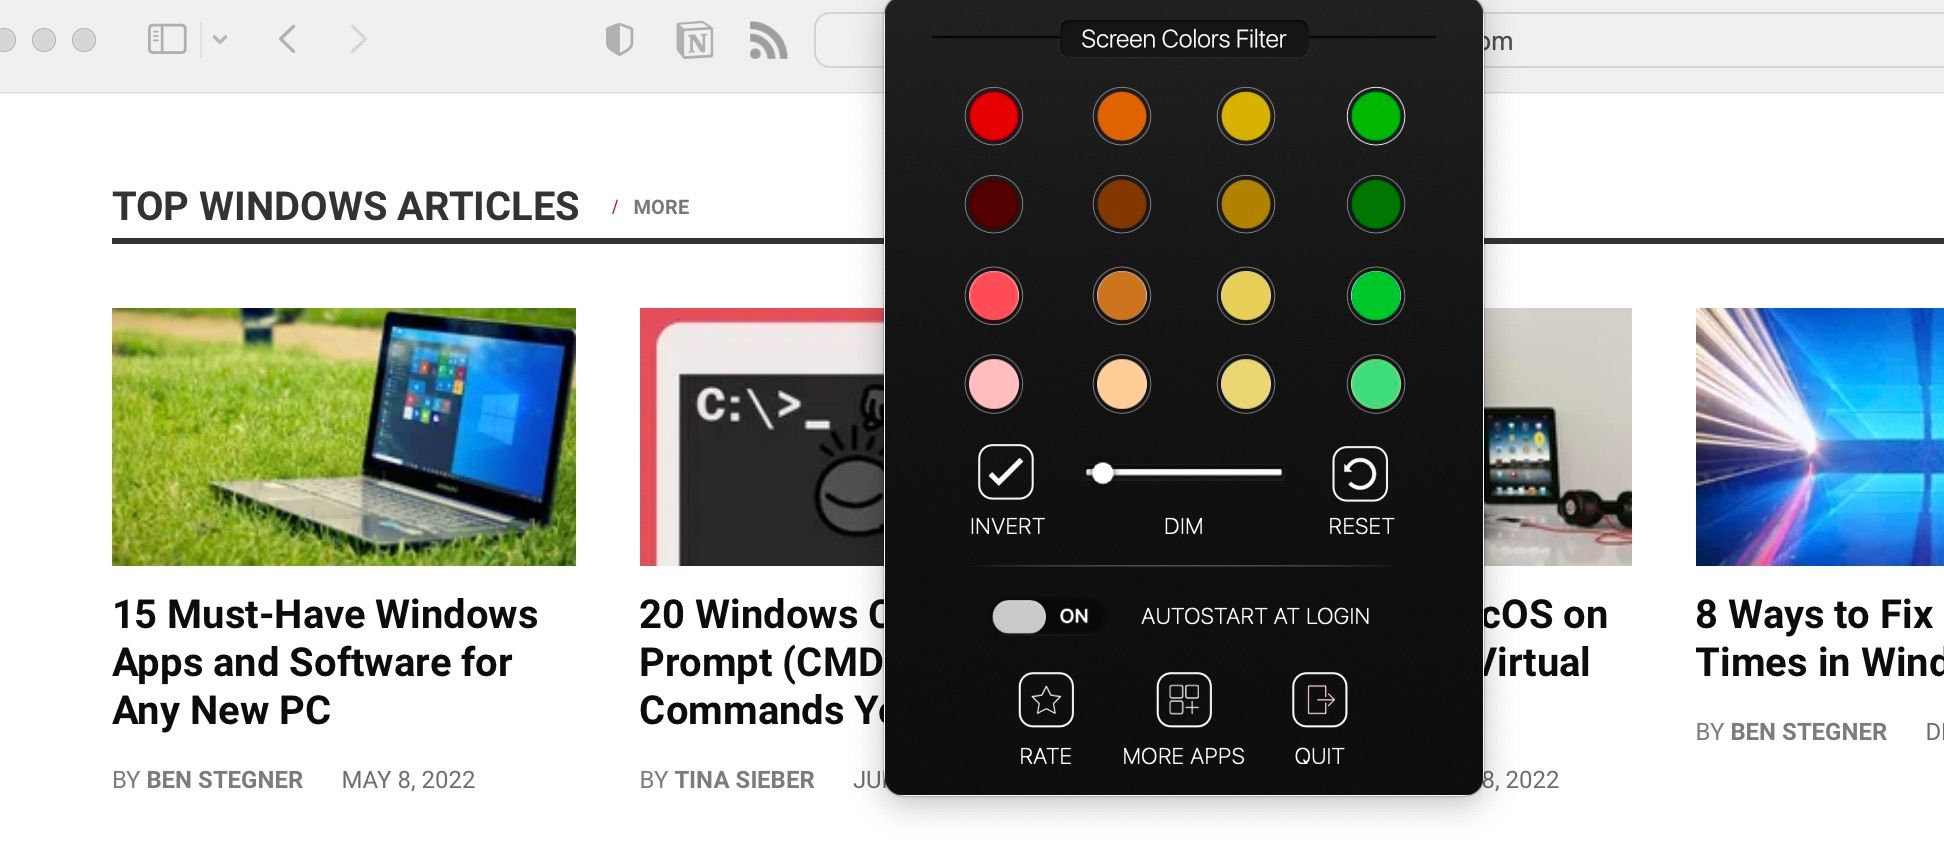 Screenshot of Screen Colors Filter tool